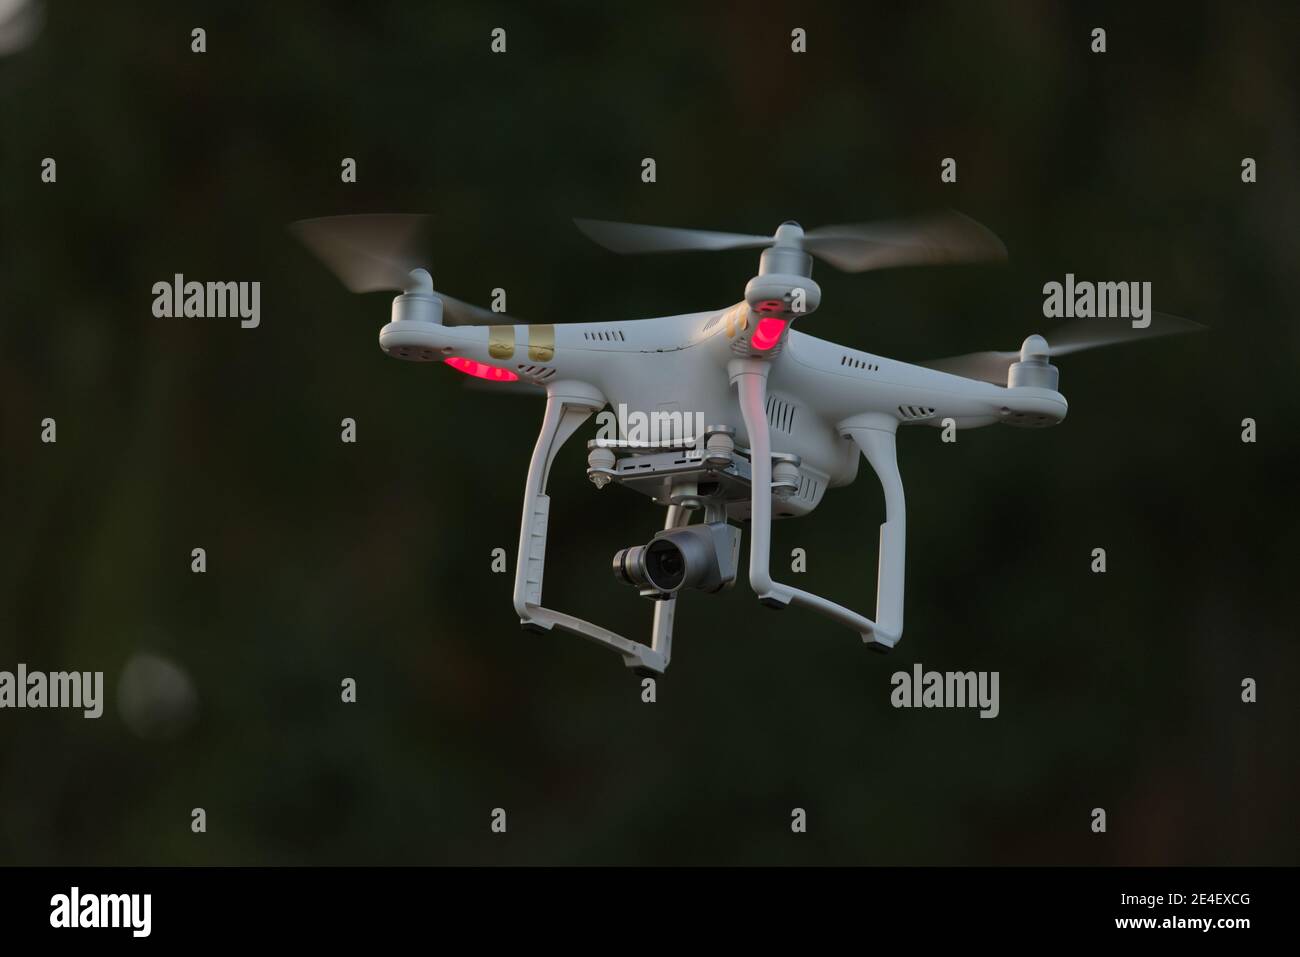 20 - caméra quadcopter isolée drone transportant un appareil photo numérique. Arrière-plan clair et sombre avec mise au point sélective, laissant le drone blanc brillant comme sujet. Banque D'Images